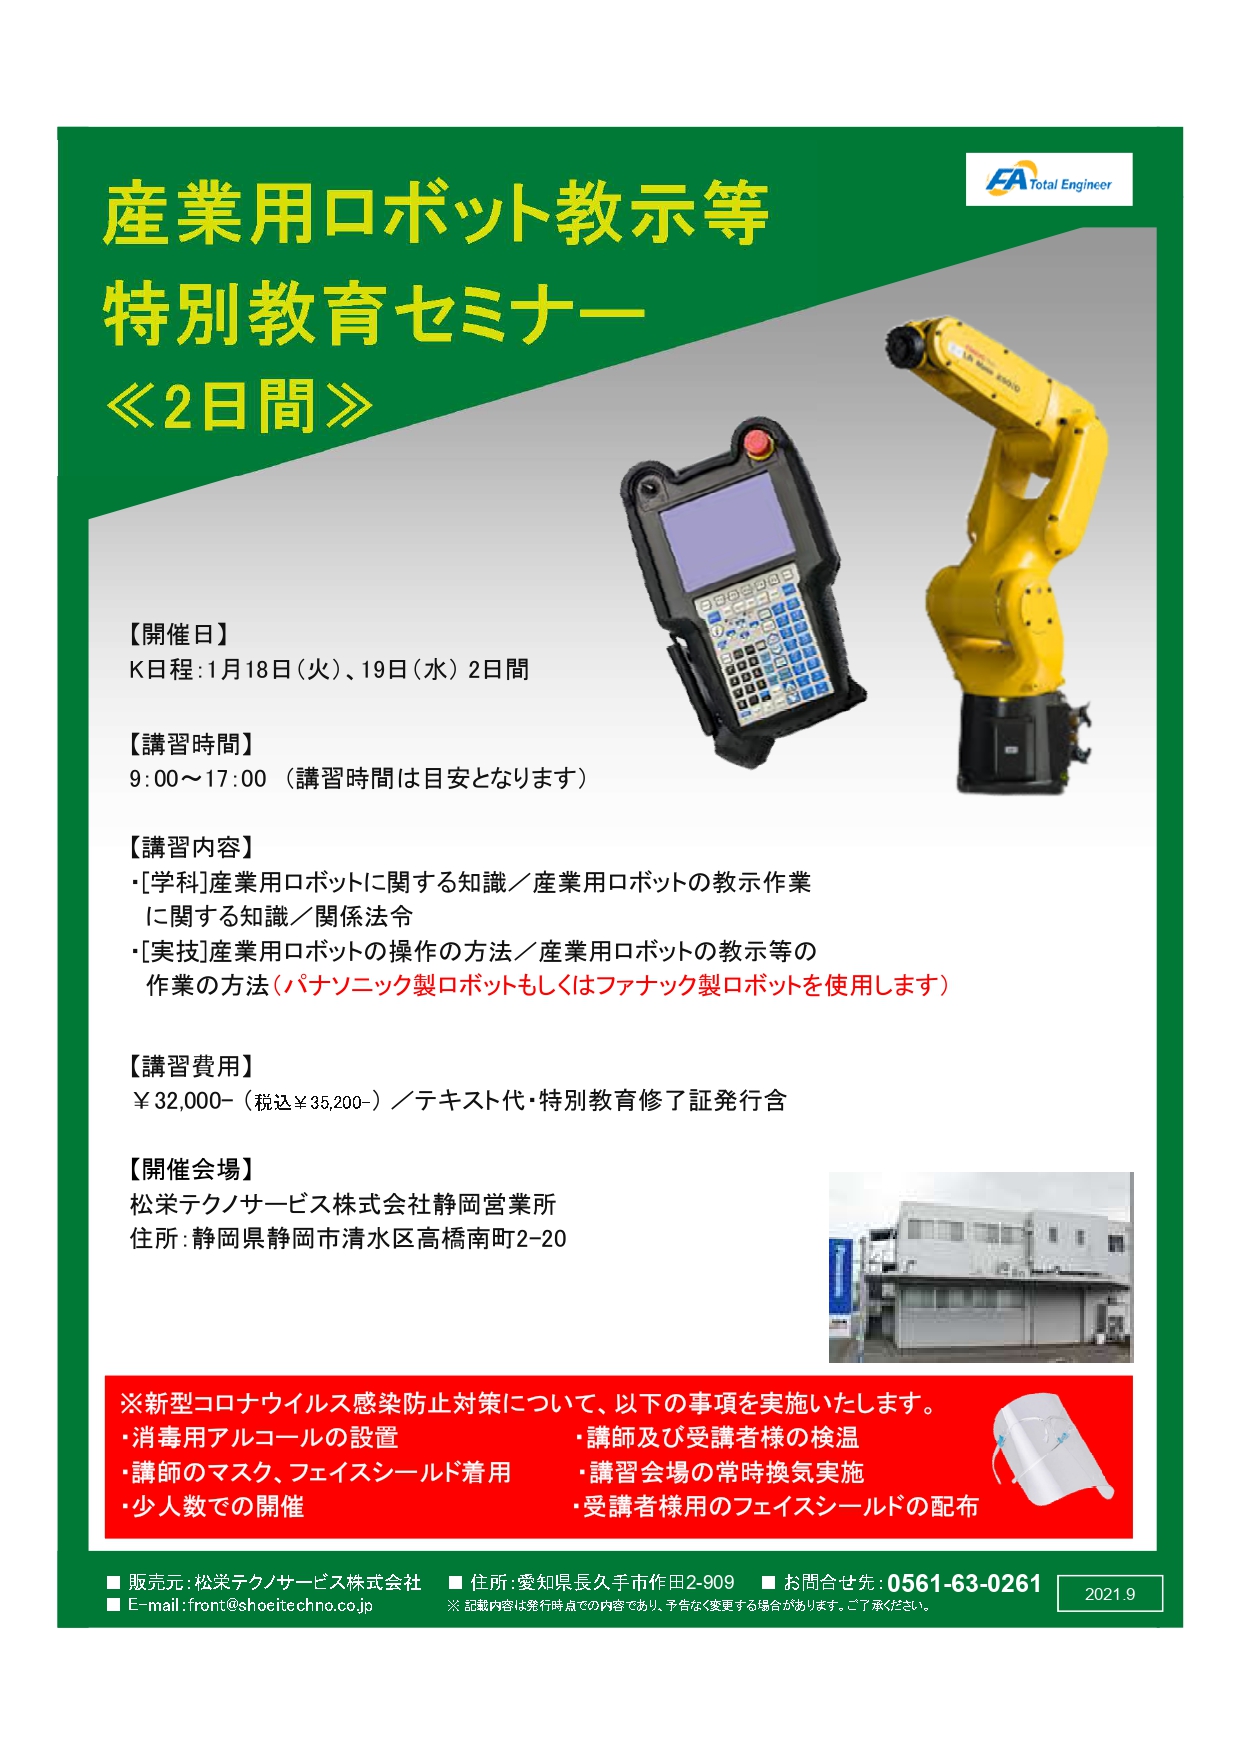 【終了しました】産業用ロボット特別教育（教示等）静岡会場開催のお知らせ【2022年1月】